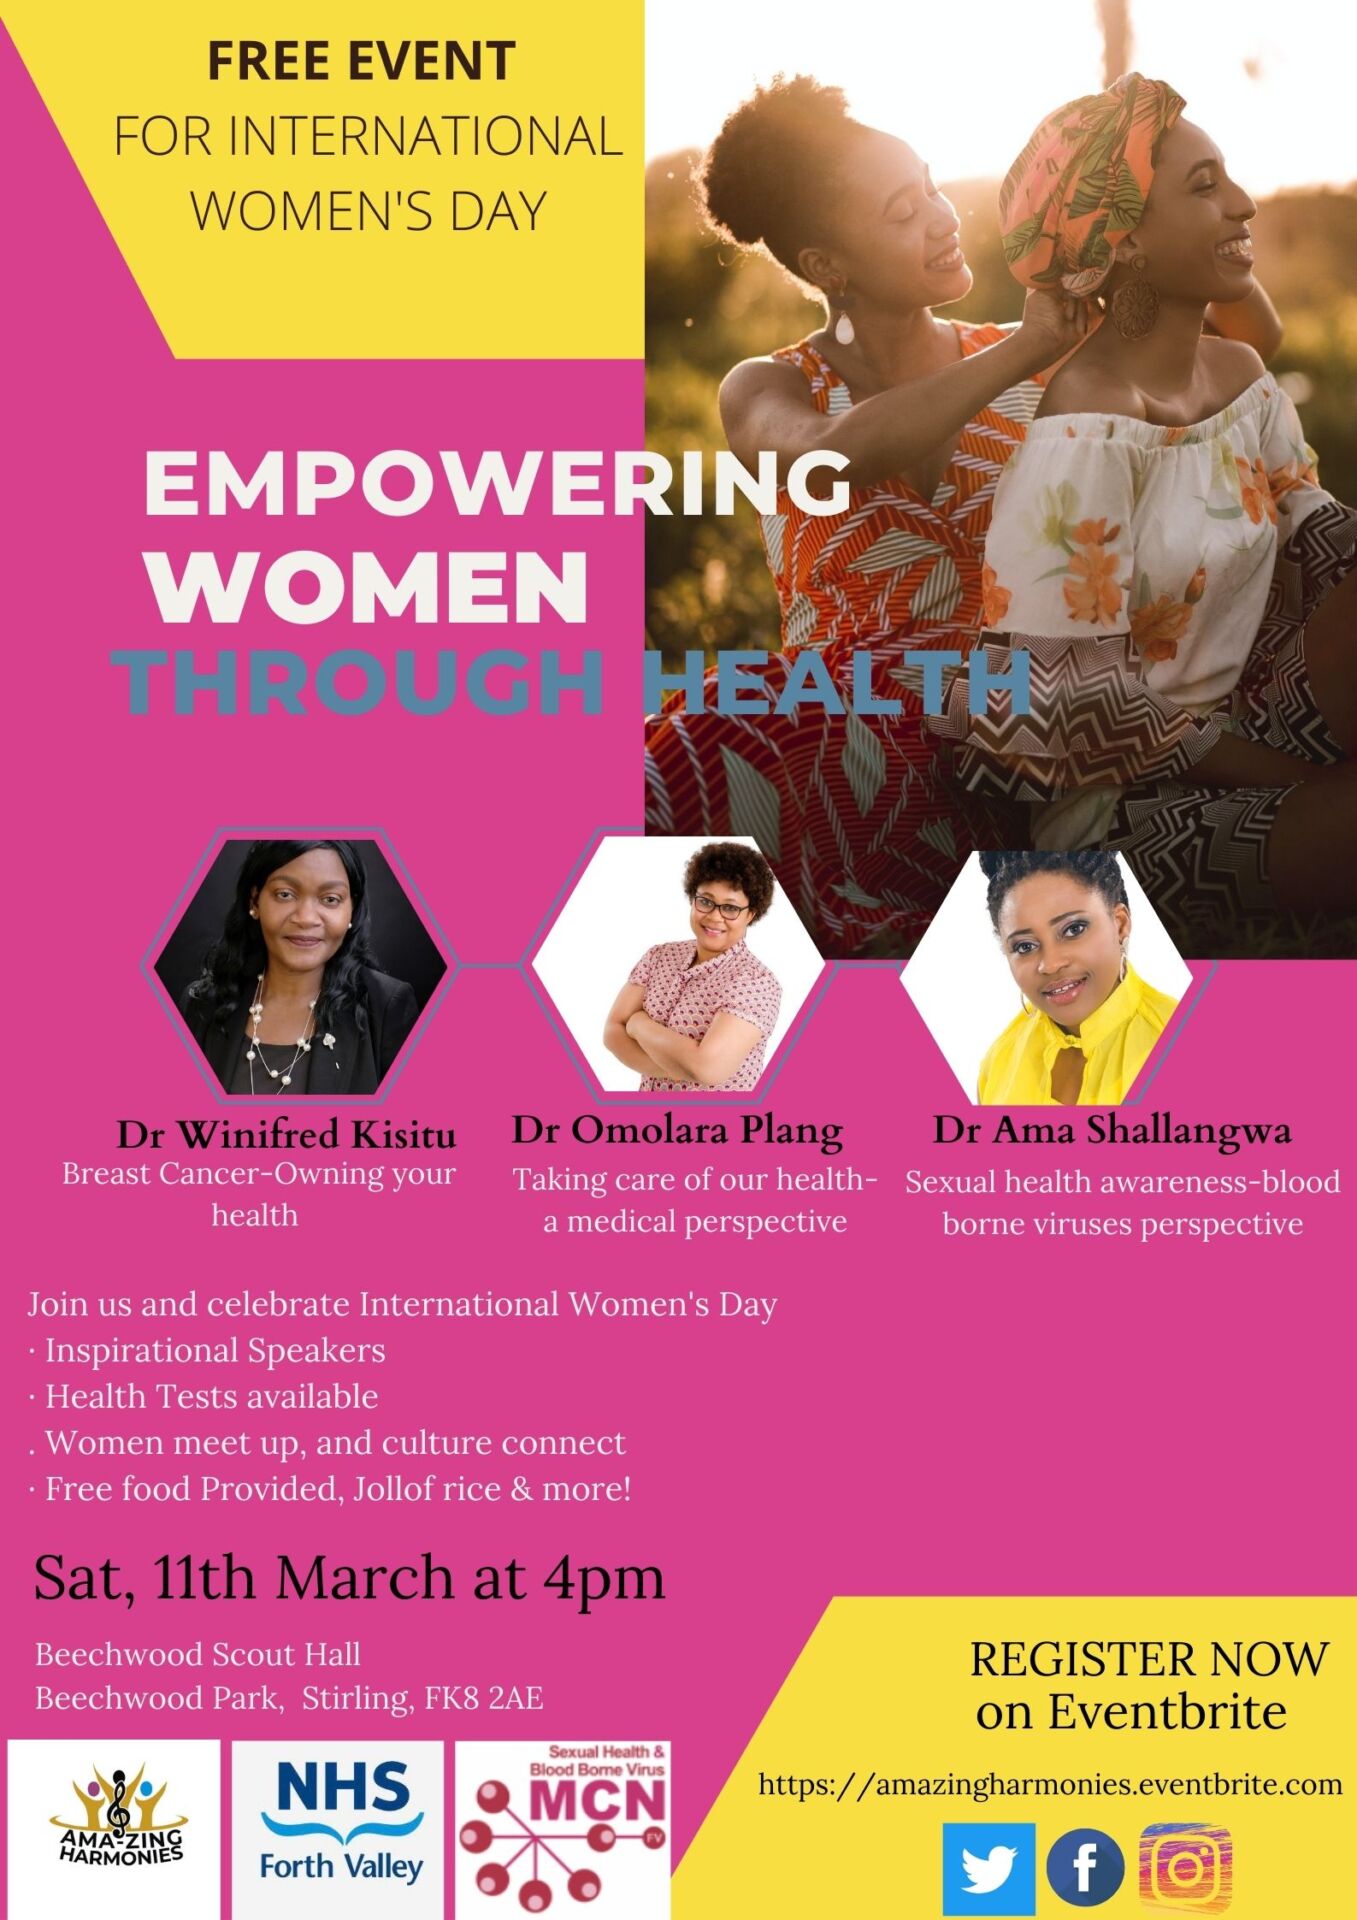 Empowering Women Through Health